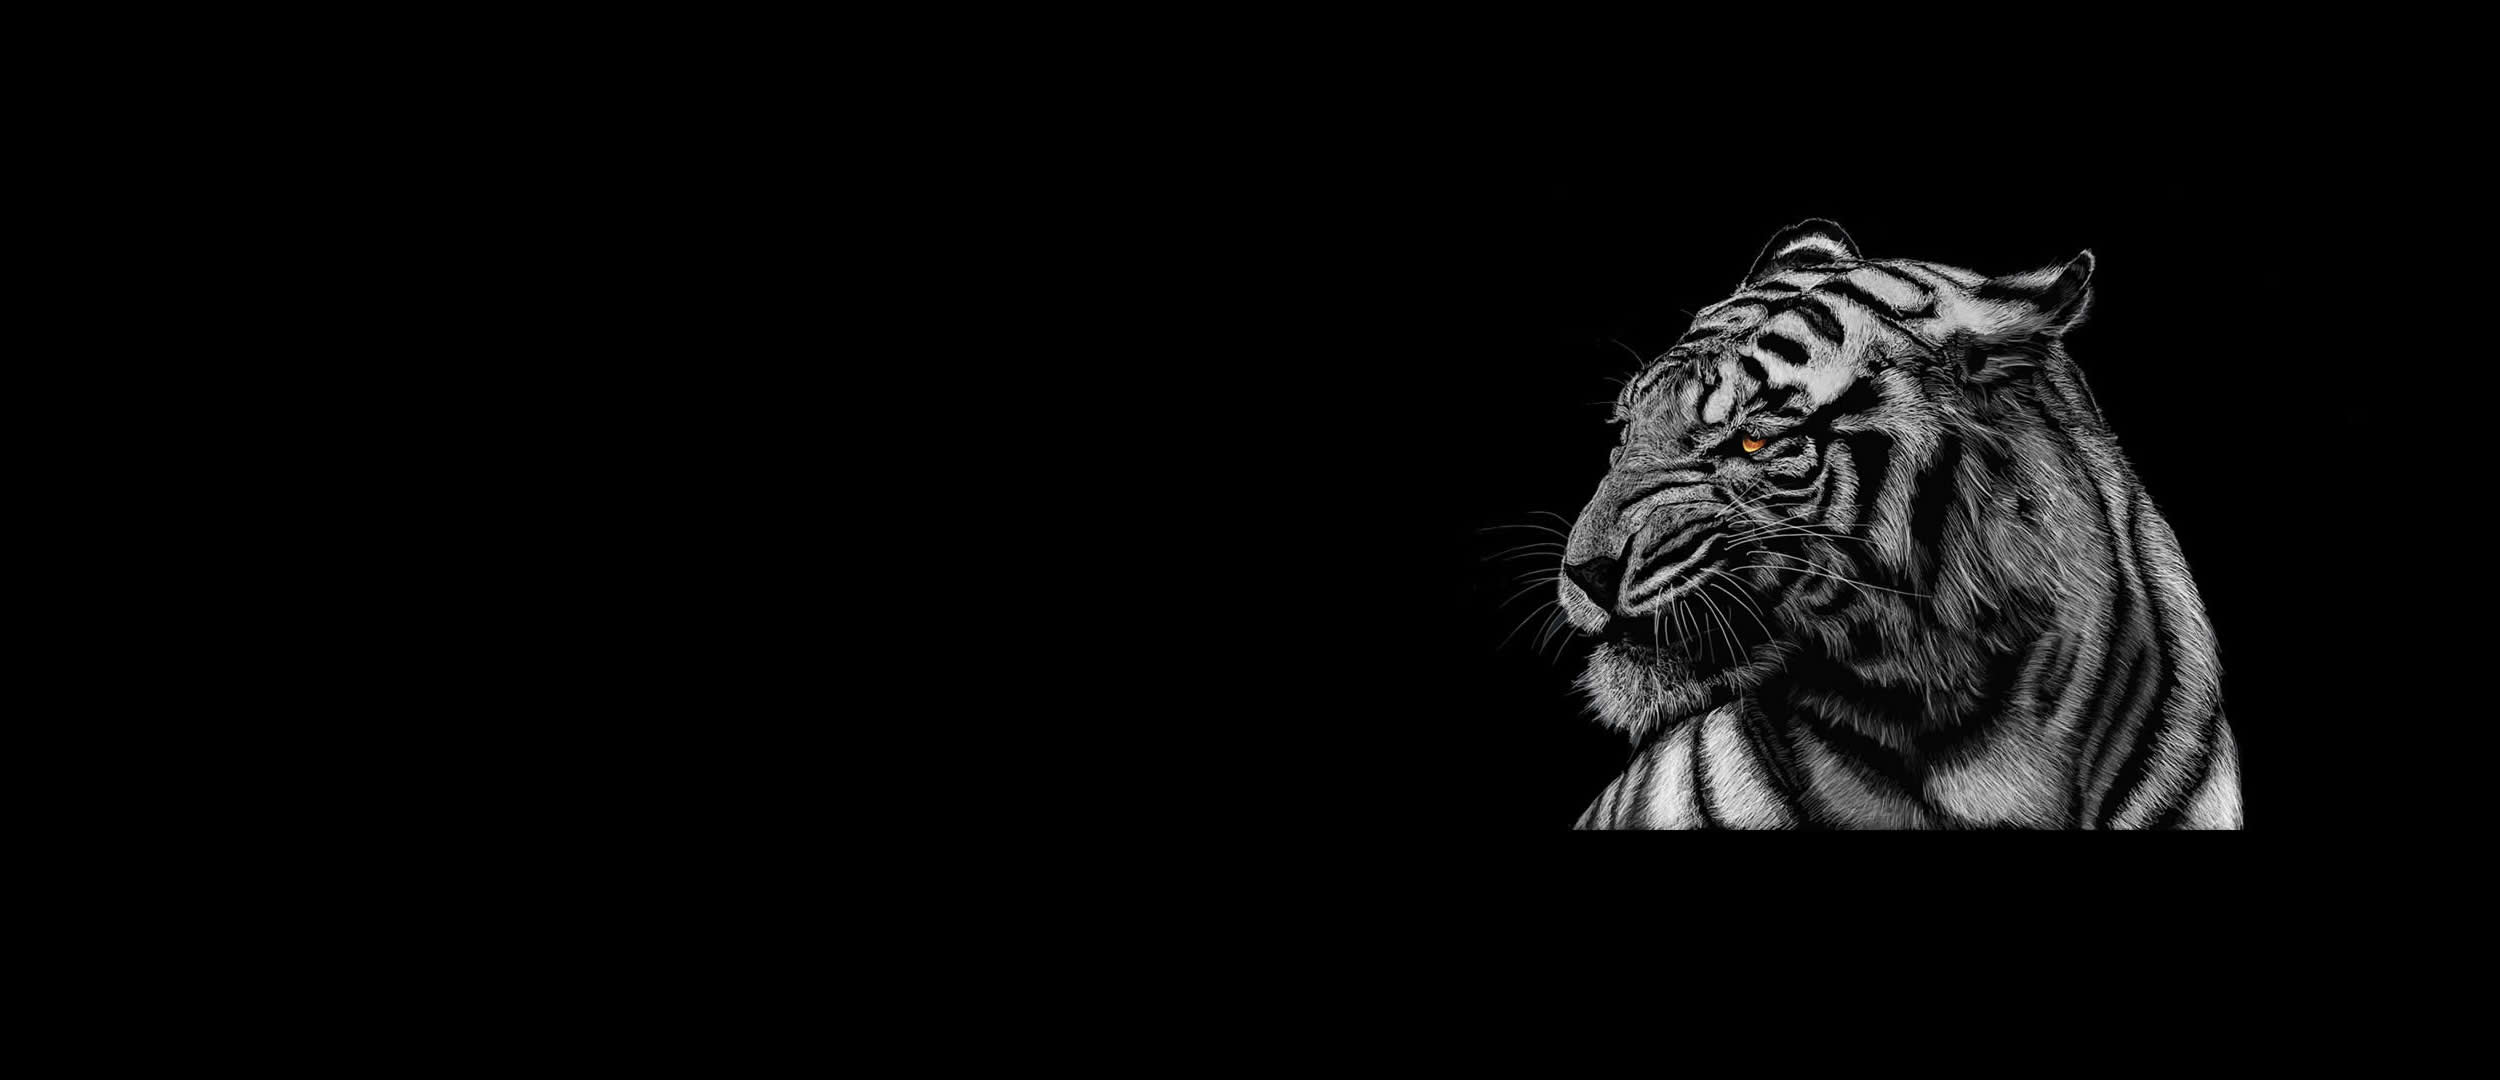 tiger-background9